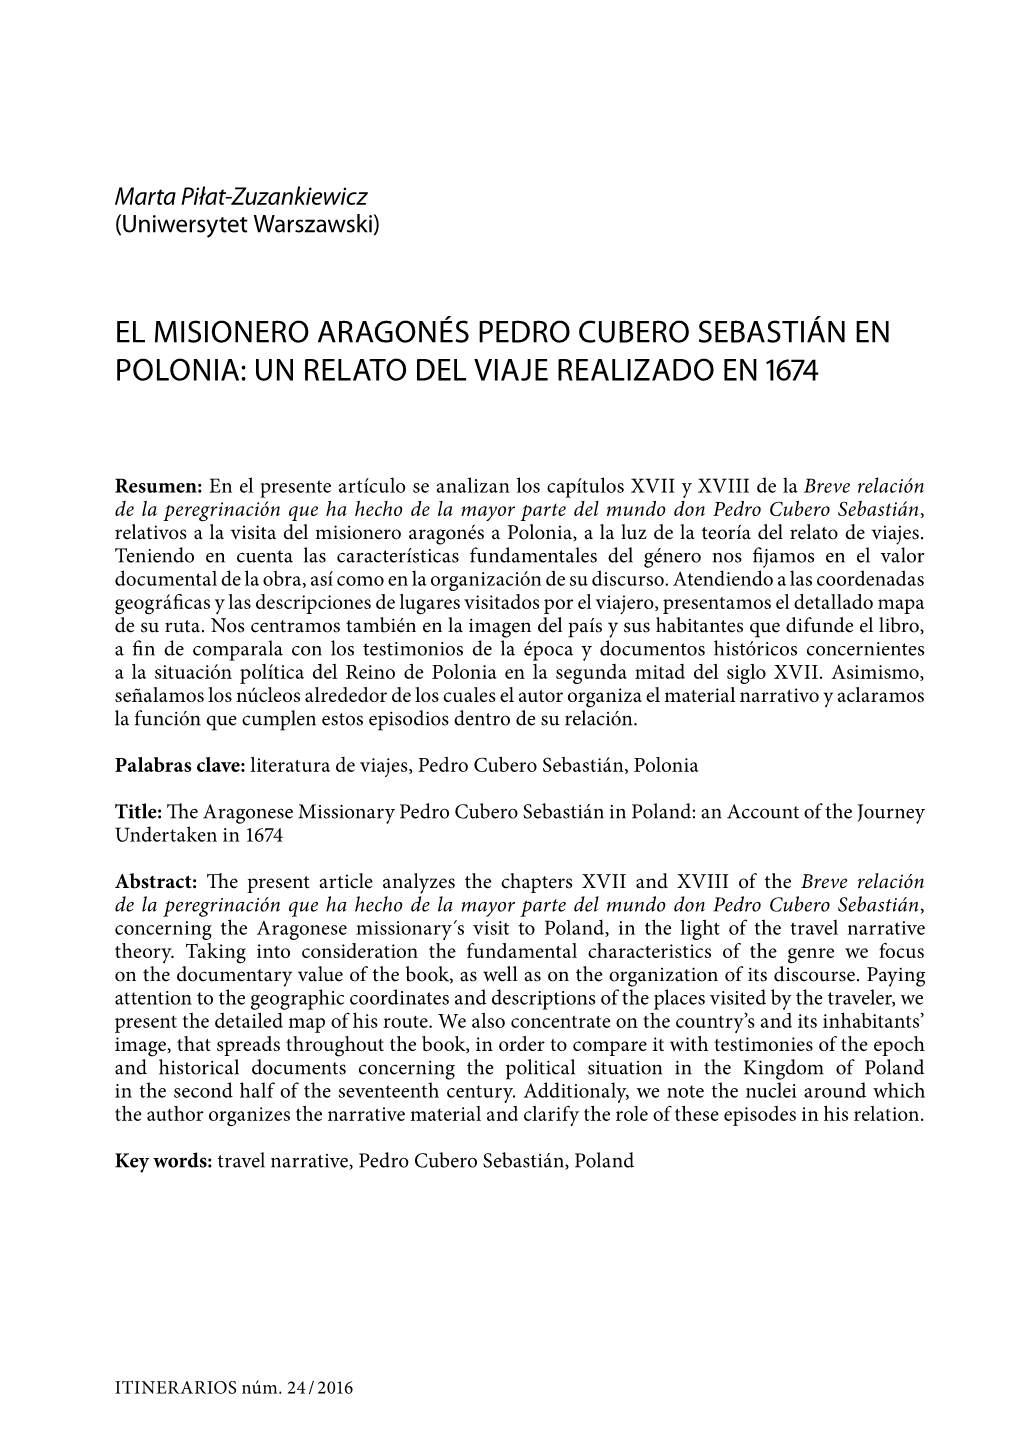 El Misionero Aragonés Pedro Cubero Sebastián En Polonia: Un Relato Del Viaje Realizado En 1674